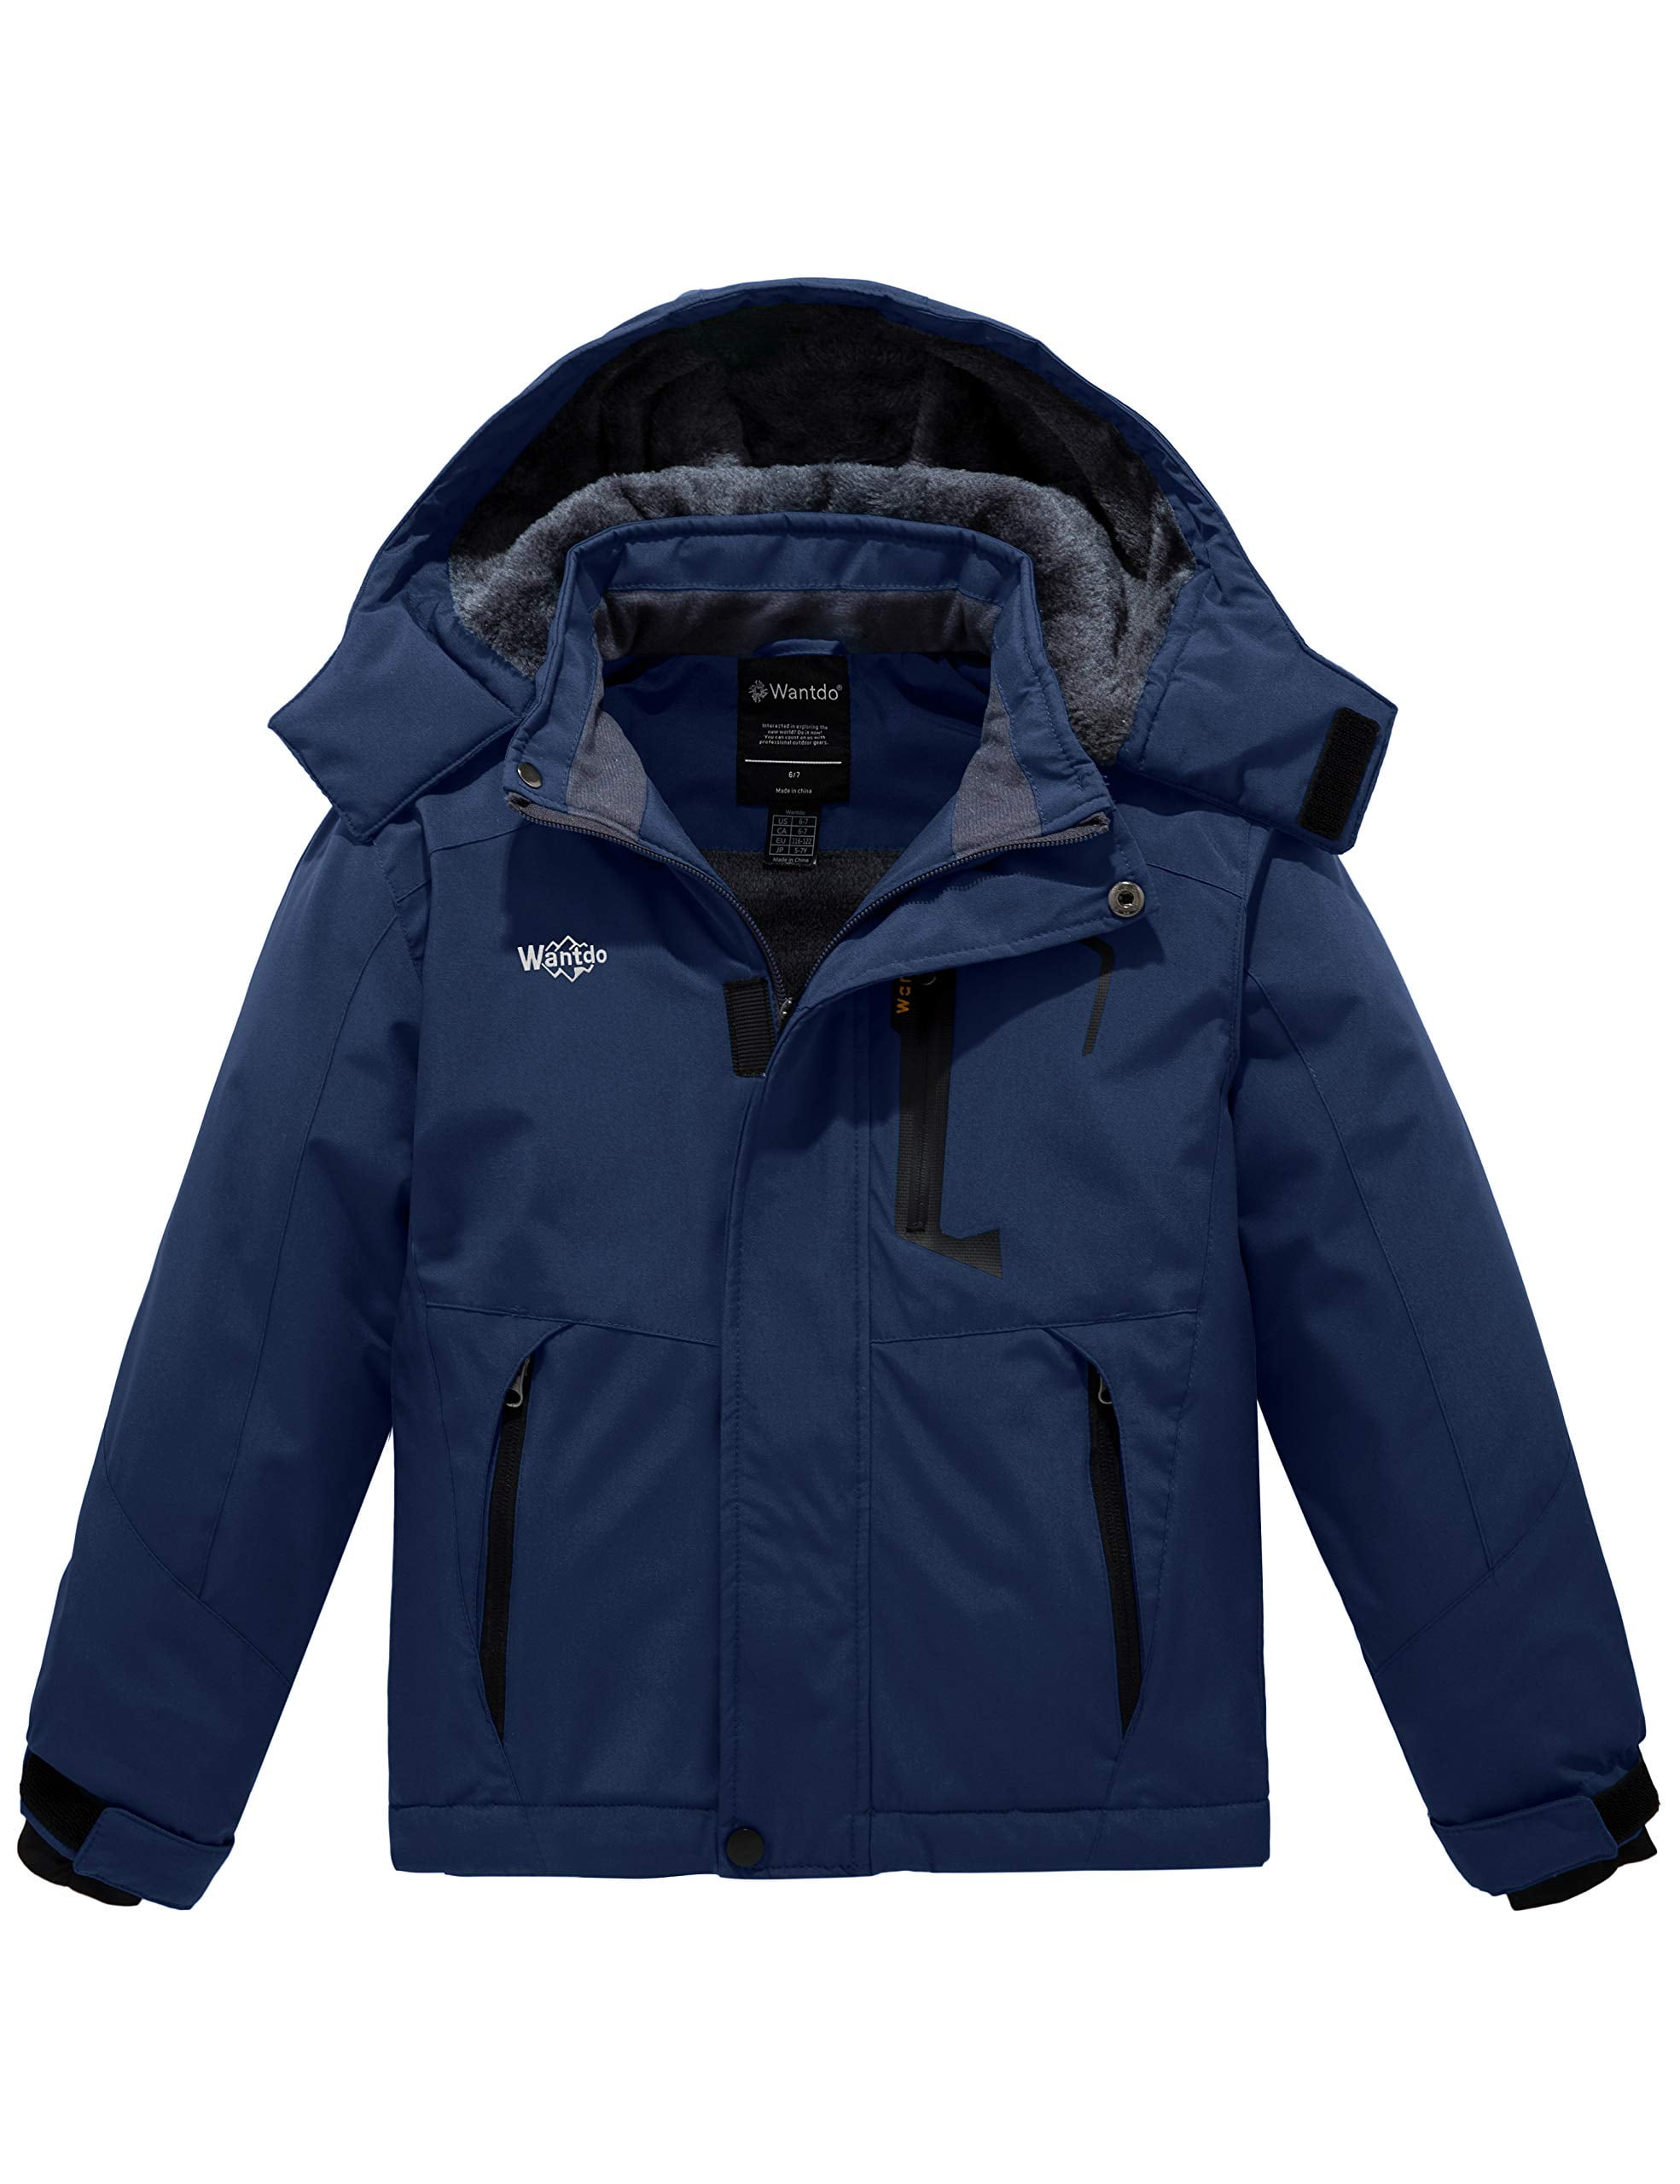 Wantdo Boy's Ski Jacket Waterproof Snow Jacket Winter Fleece Coat Navy Blue  8 